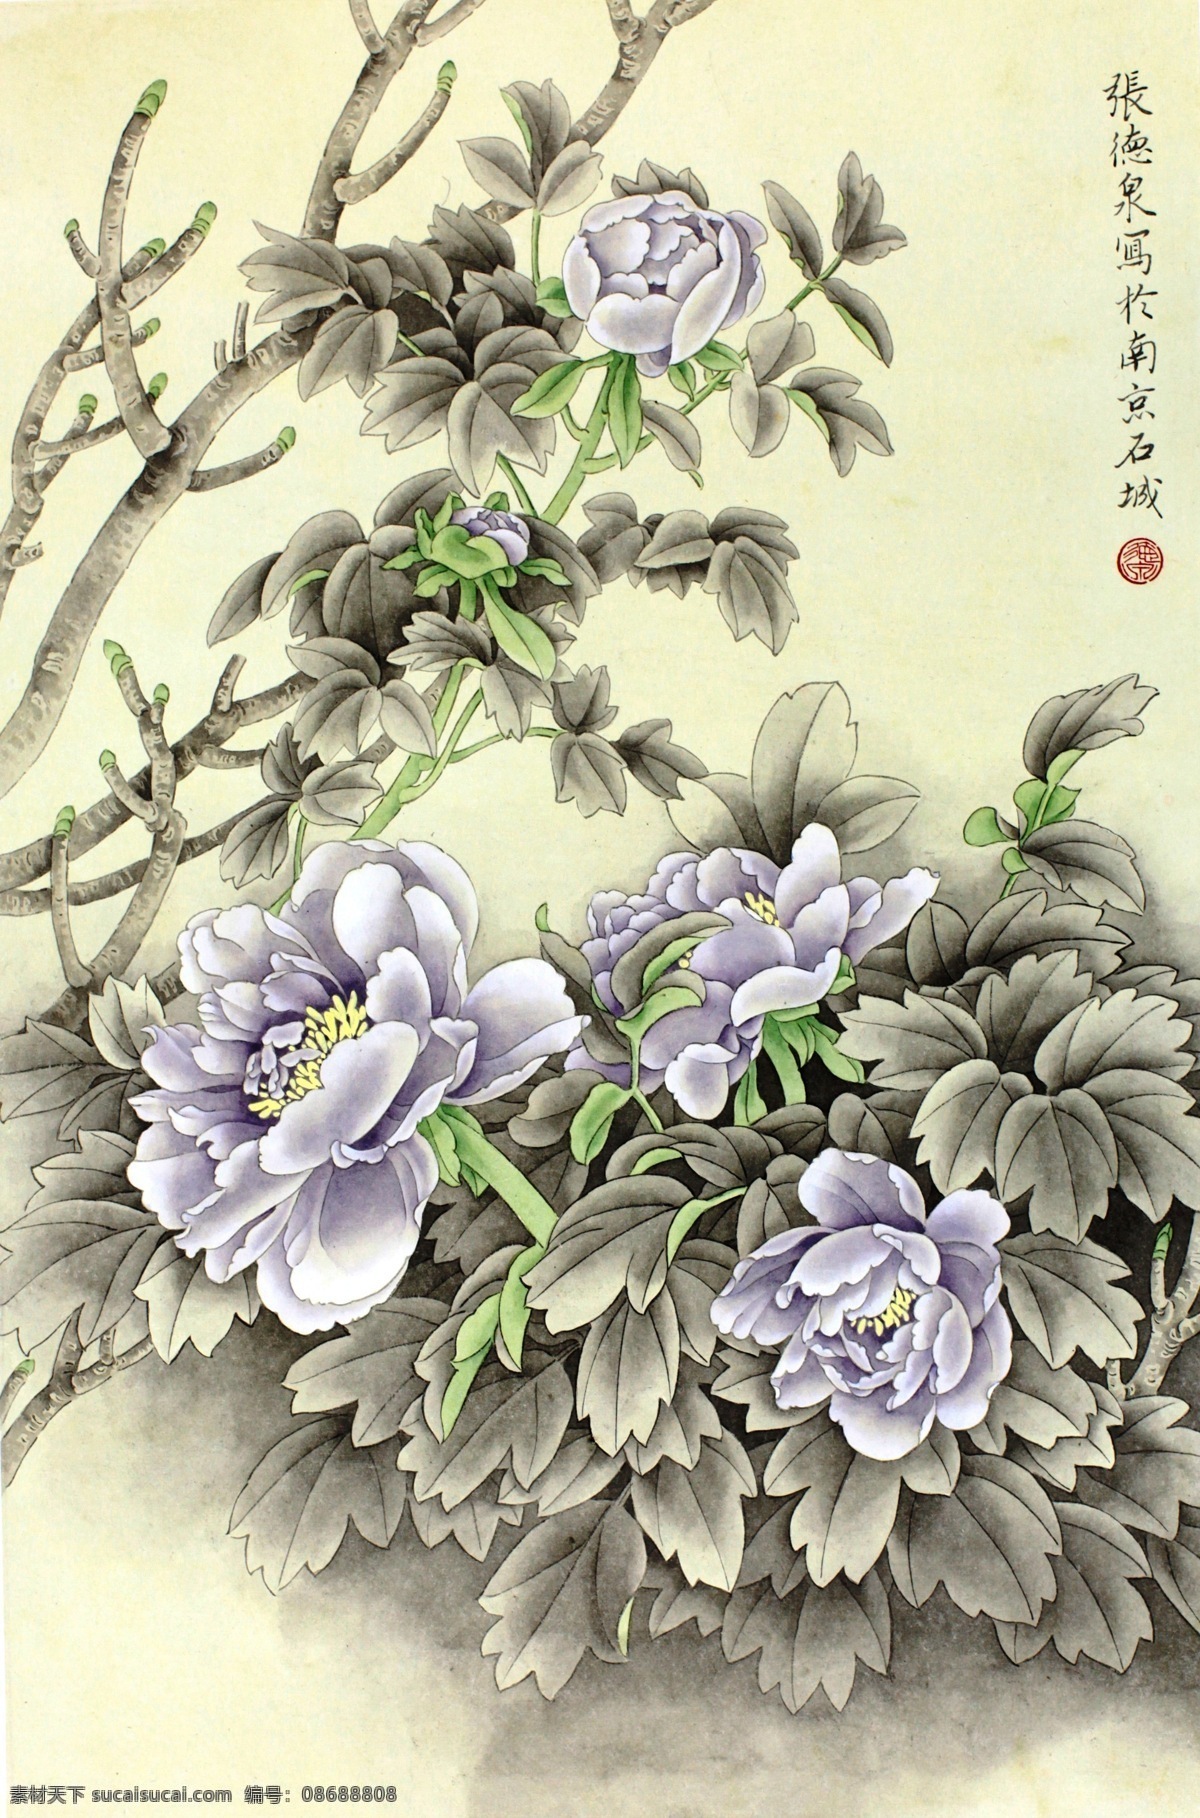 紫牡丹 牡丹 国画 花鸟画 工笔画 张德泉 绘画书法 文化艺术